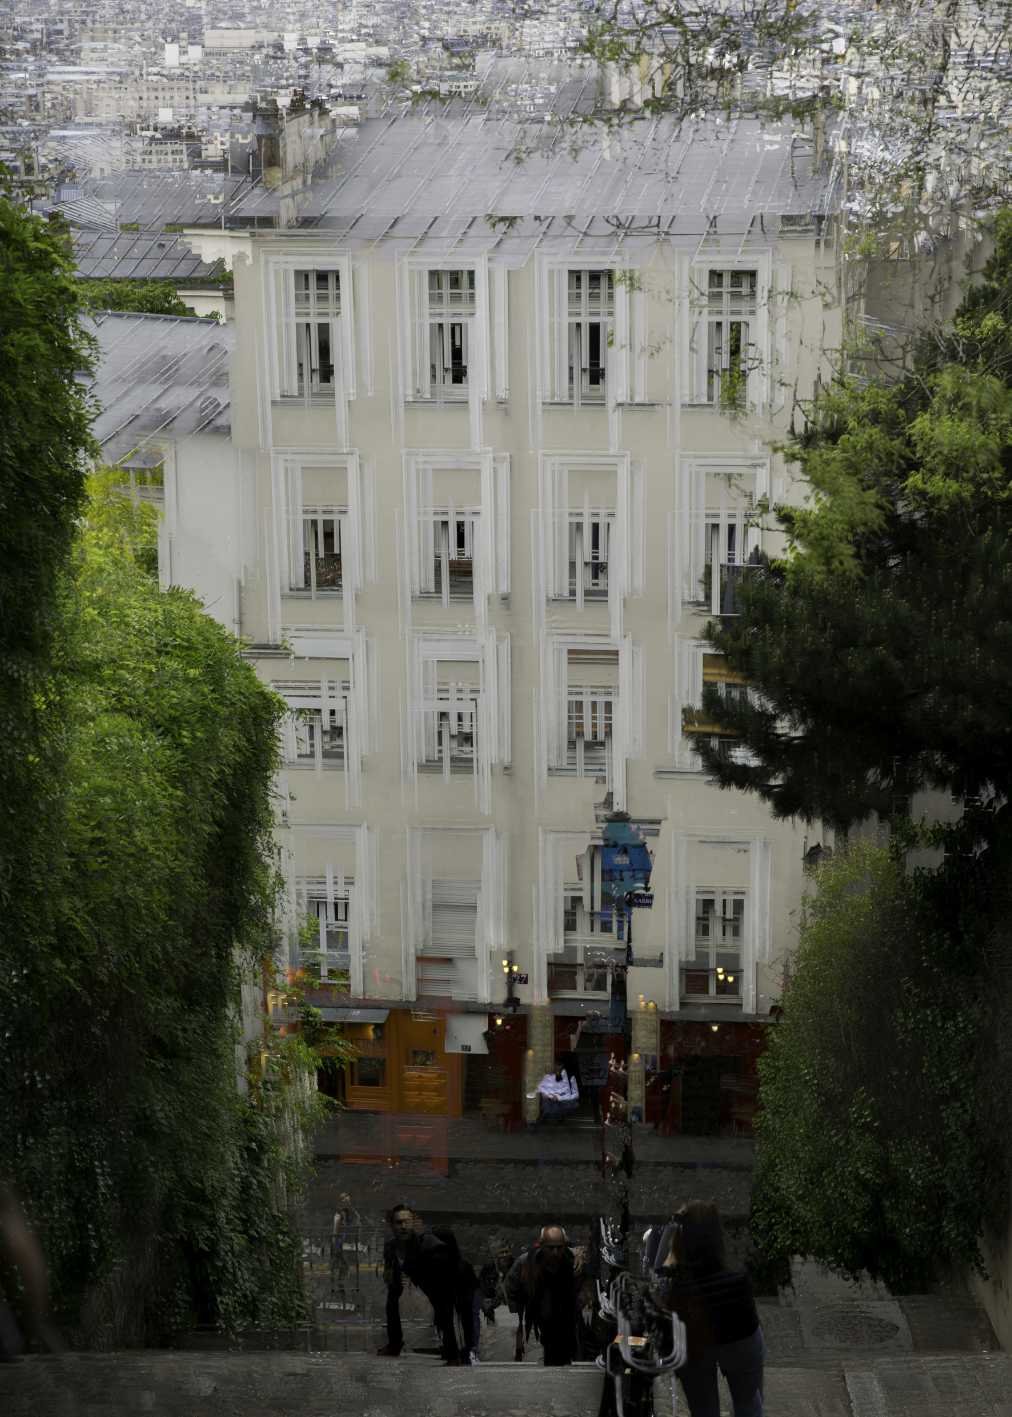  Montmartre II 105x75cm - 5ed 2015 